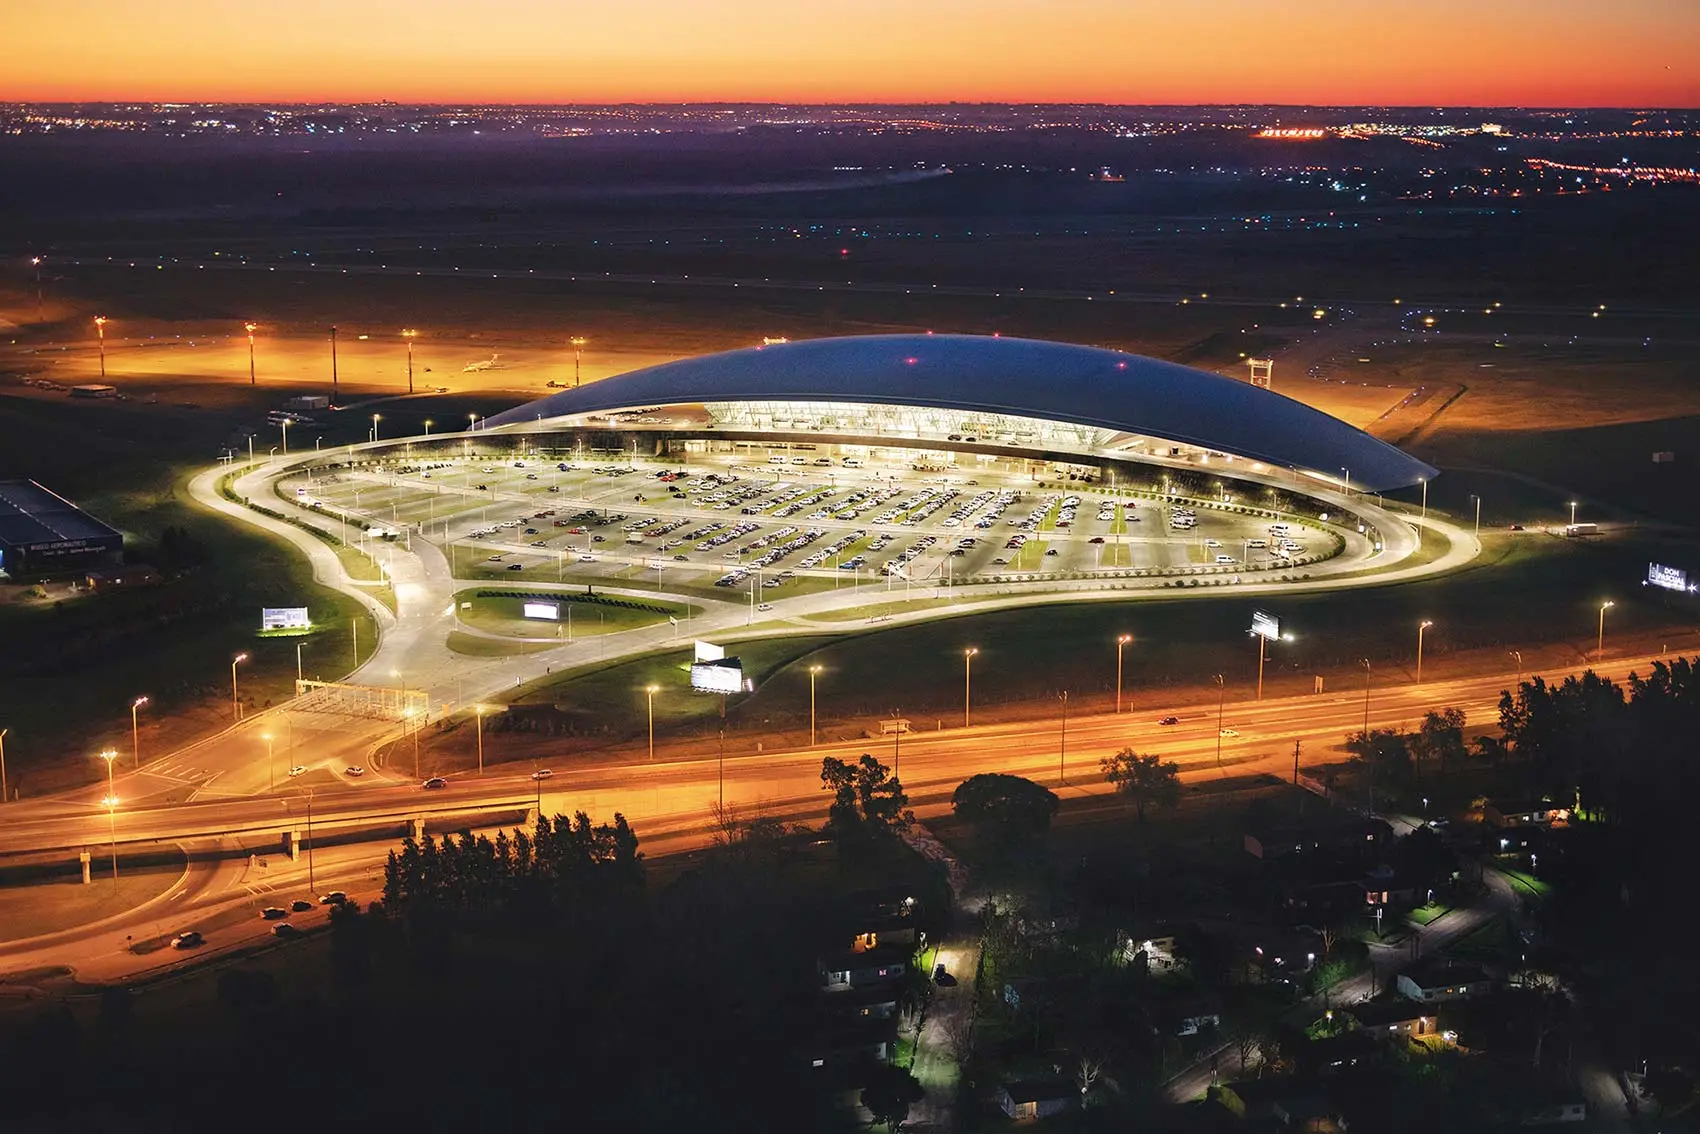 aeropuerto laguna del sauce a punta del este - Cuántos aeropuertos hay en Uruguay